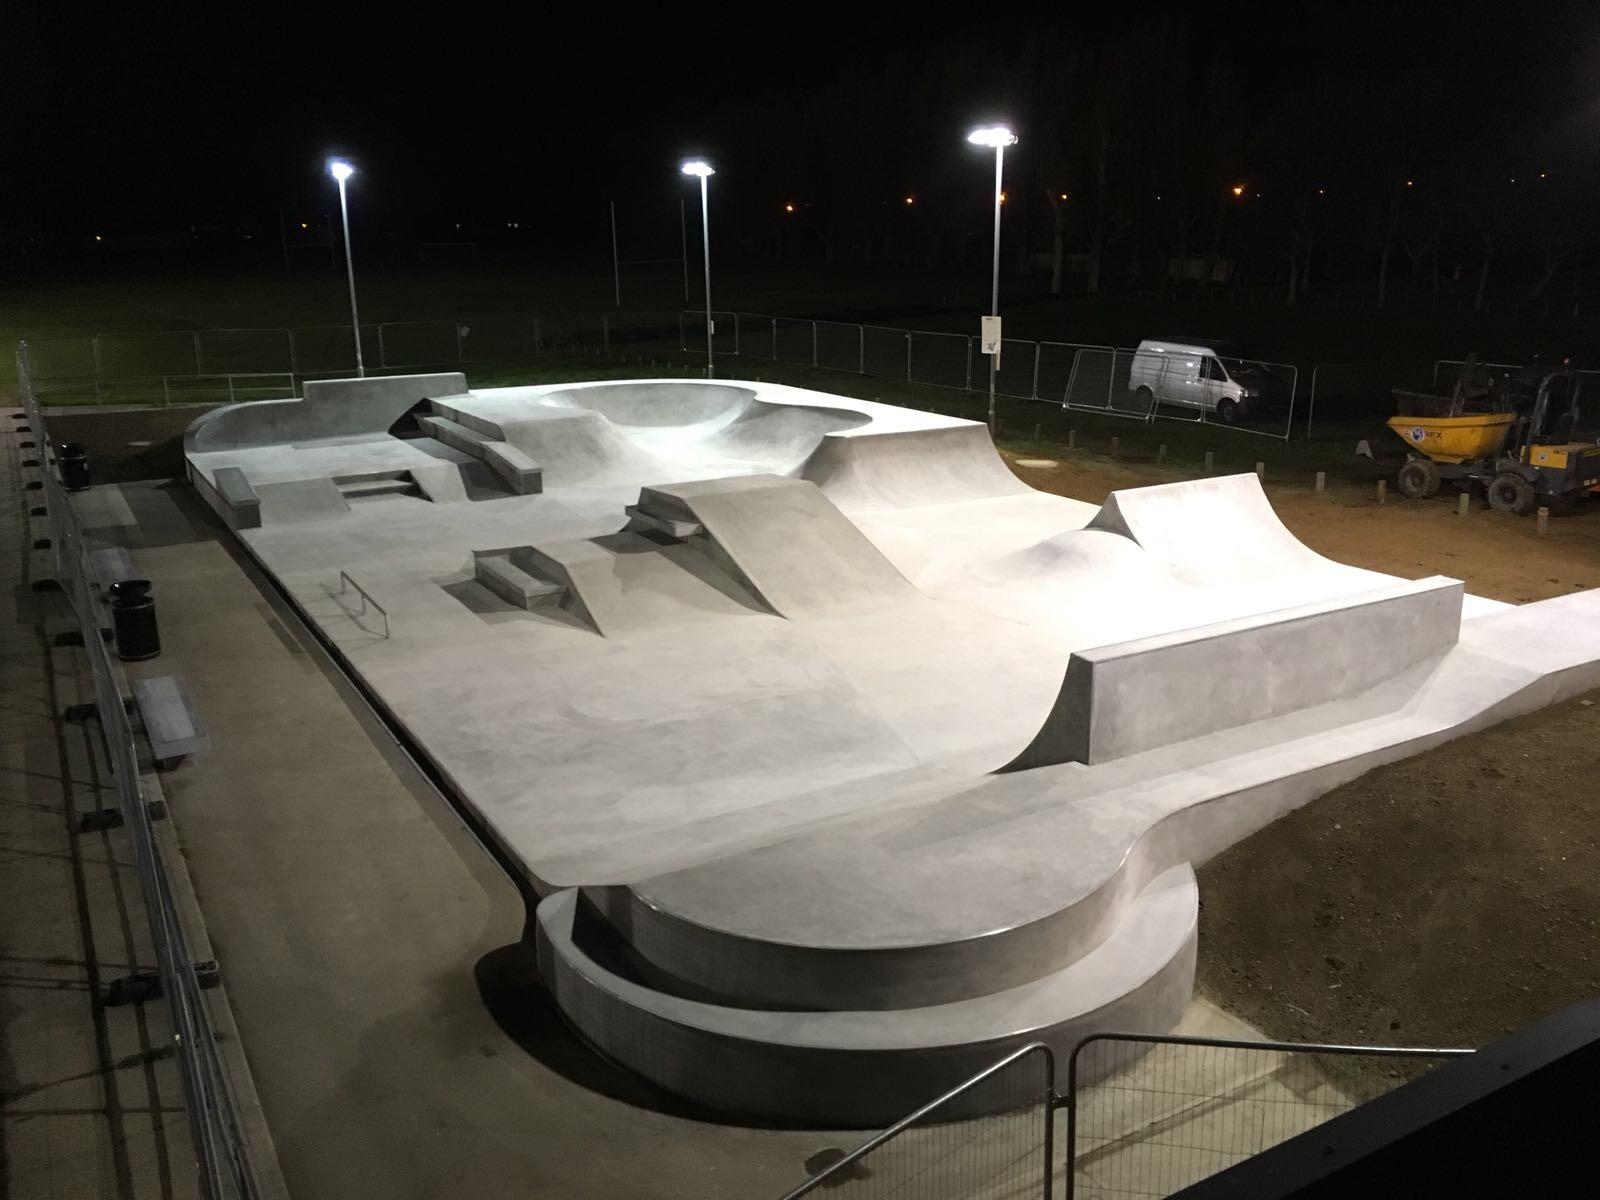 New Skate Park in Harwich